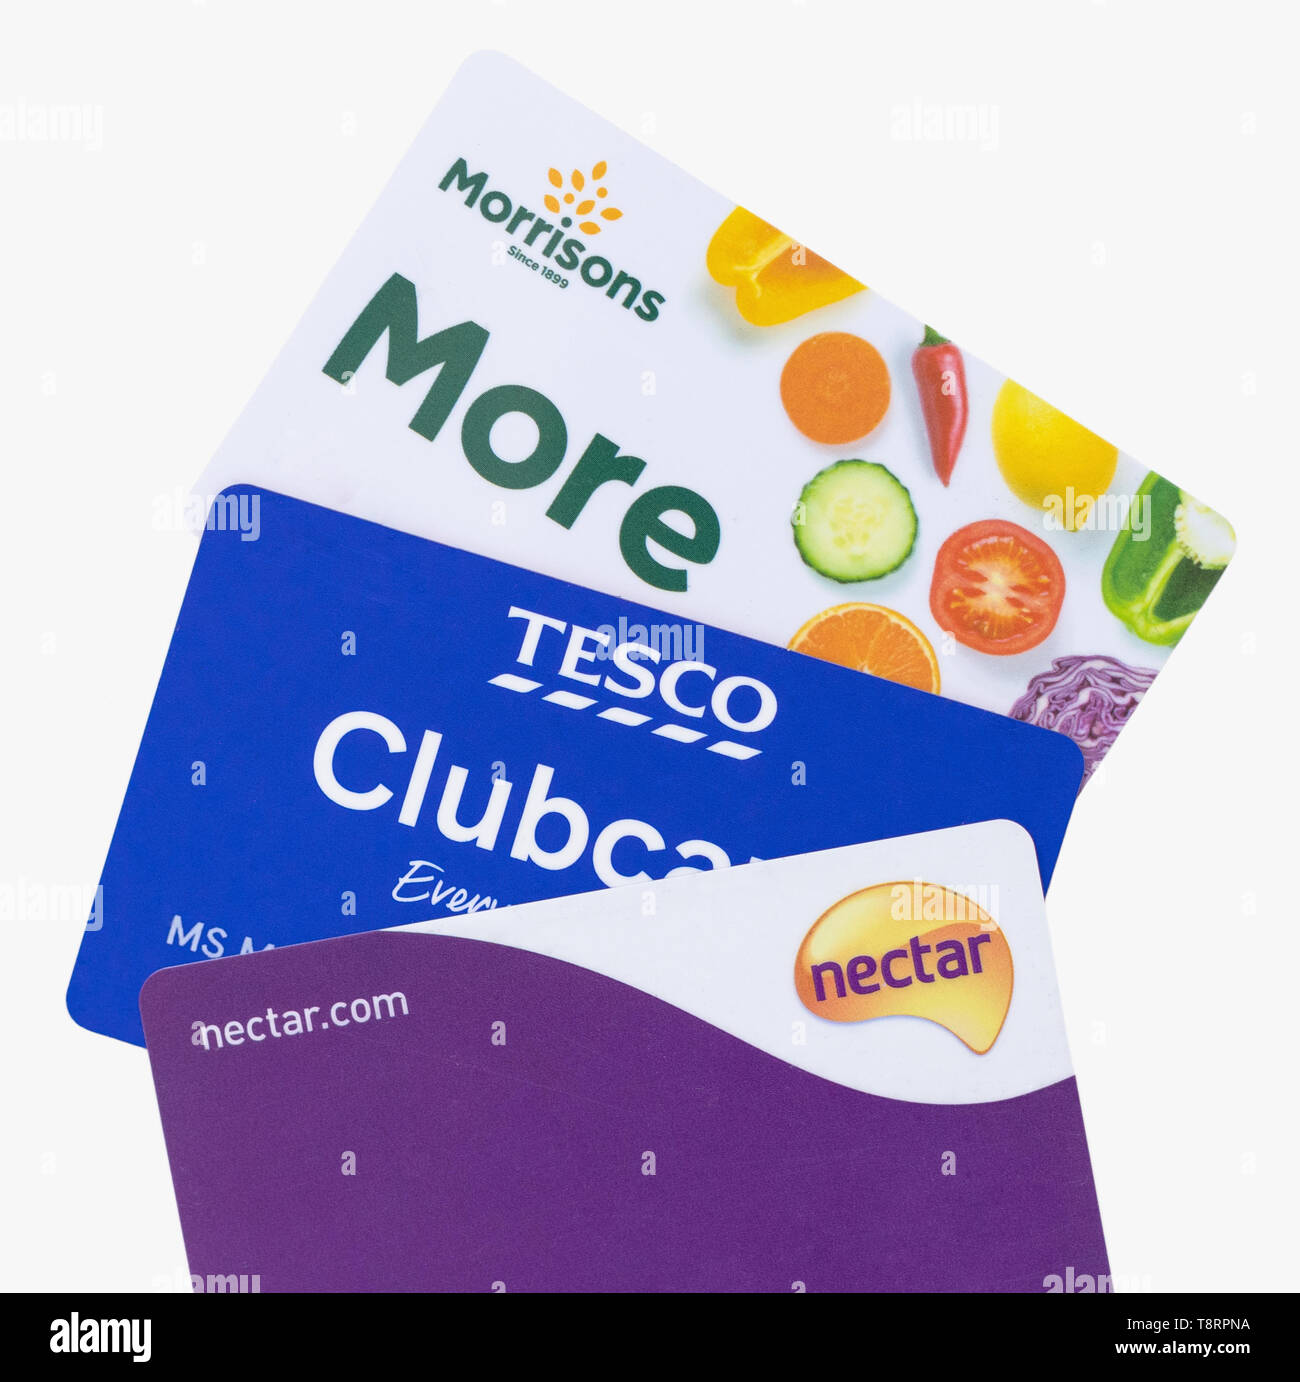 Londres, Royaume-Uni - 14 mai 2019 - Nectar Sainsburys, carte clubcard Tesco et Morrisons Plus de cartes isolé sur fond blanc Banque D'Images